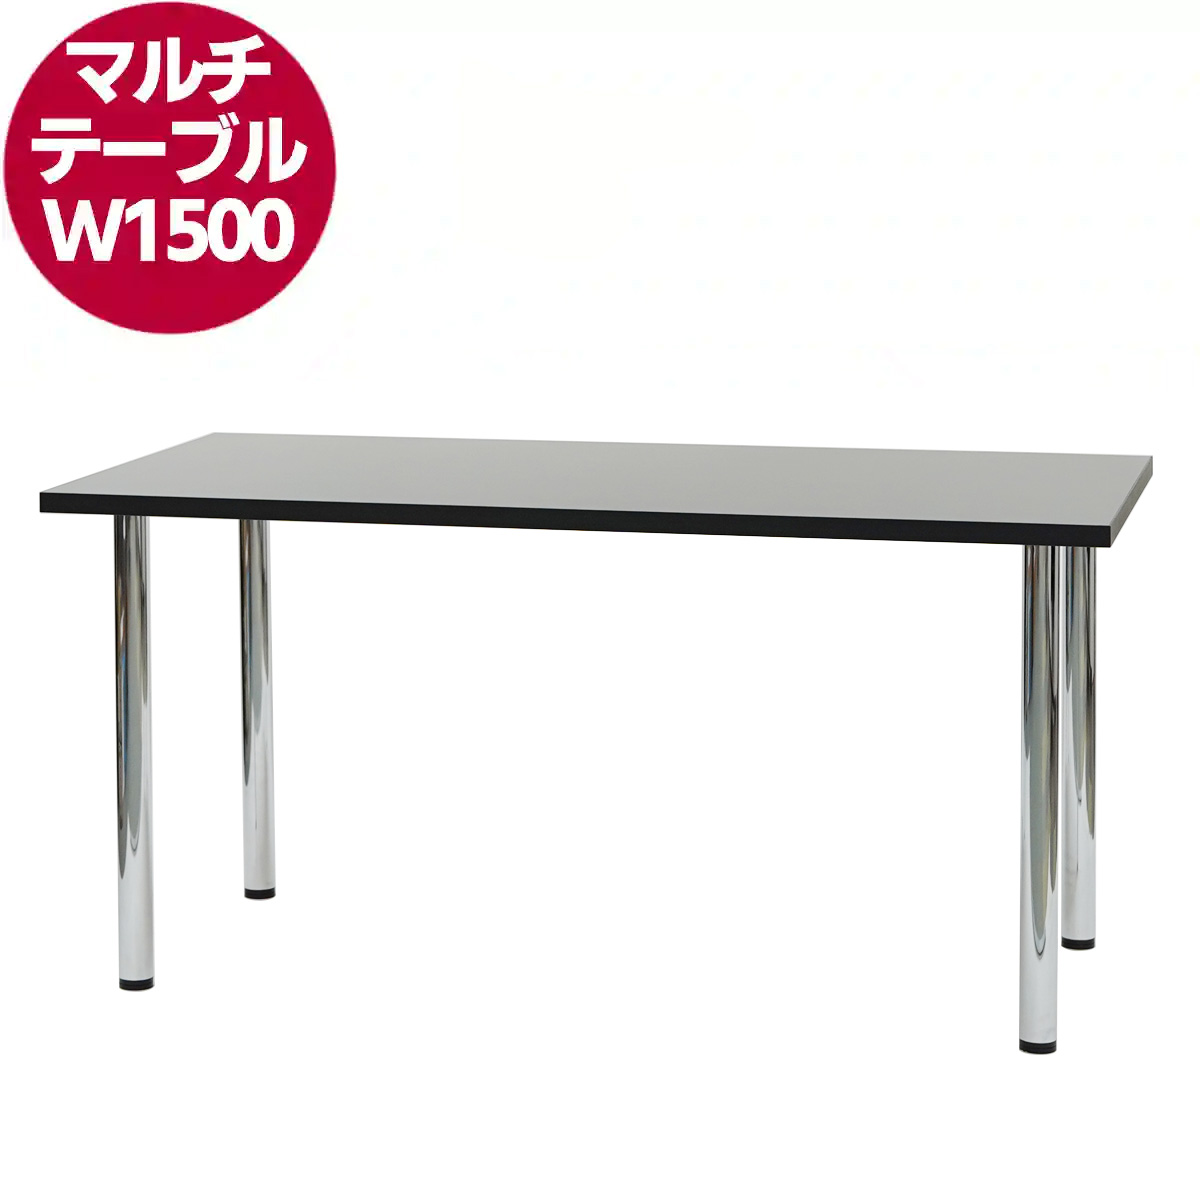 マルチテーブル W1500(ブラック)